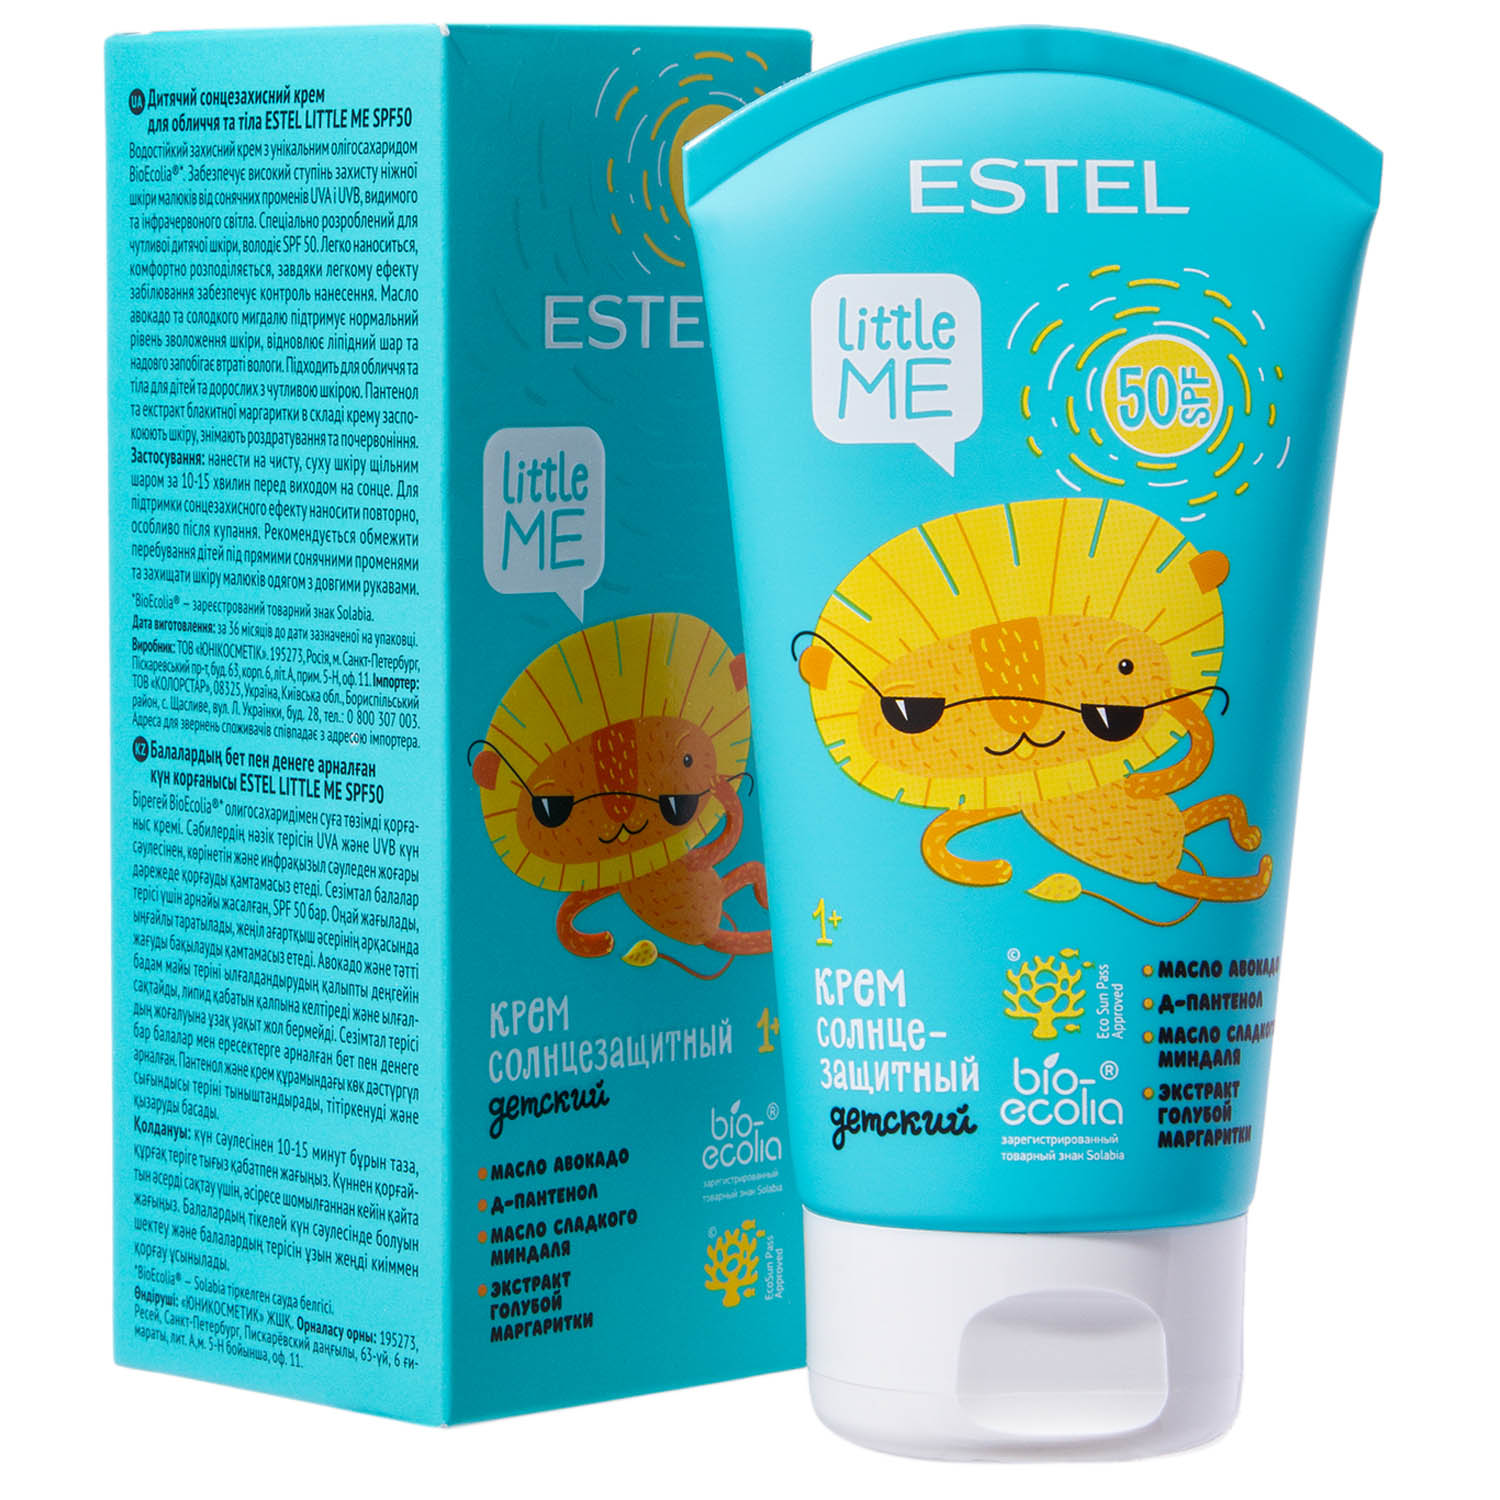 Estel Детский солнцезащитный крем для лица и тела SPF 50, 150 мл (Estel, Little Me)